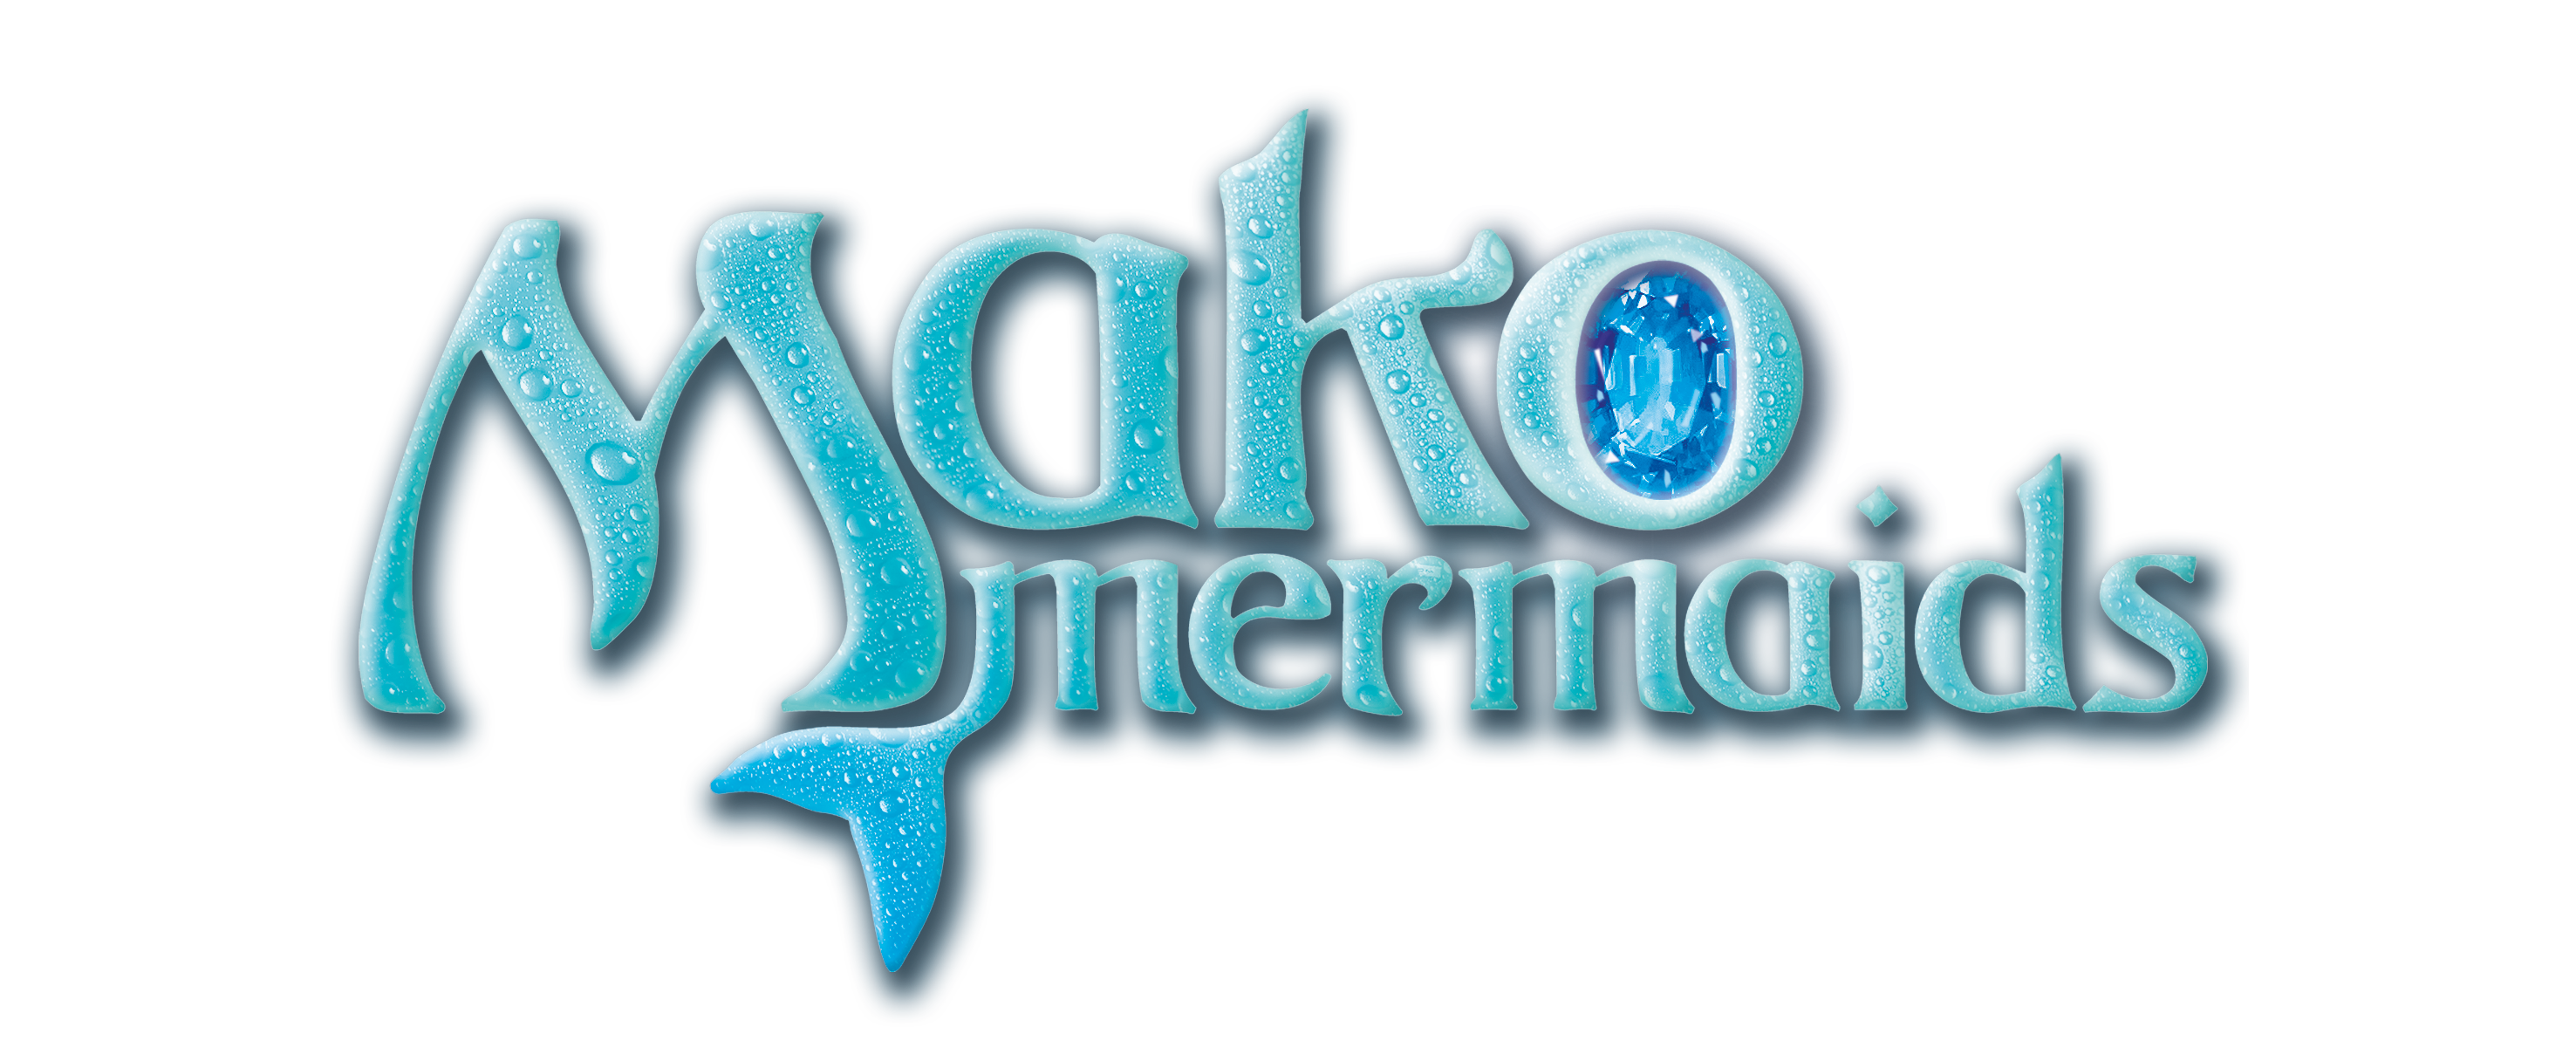 Mako Mermaids S:3 H2O: Mermaid Adventure news by H2OMermaidsClub on  DeviantArt